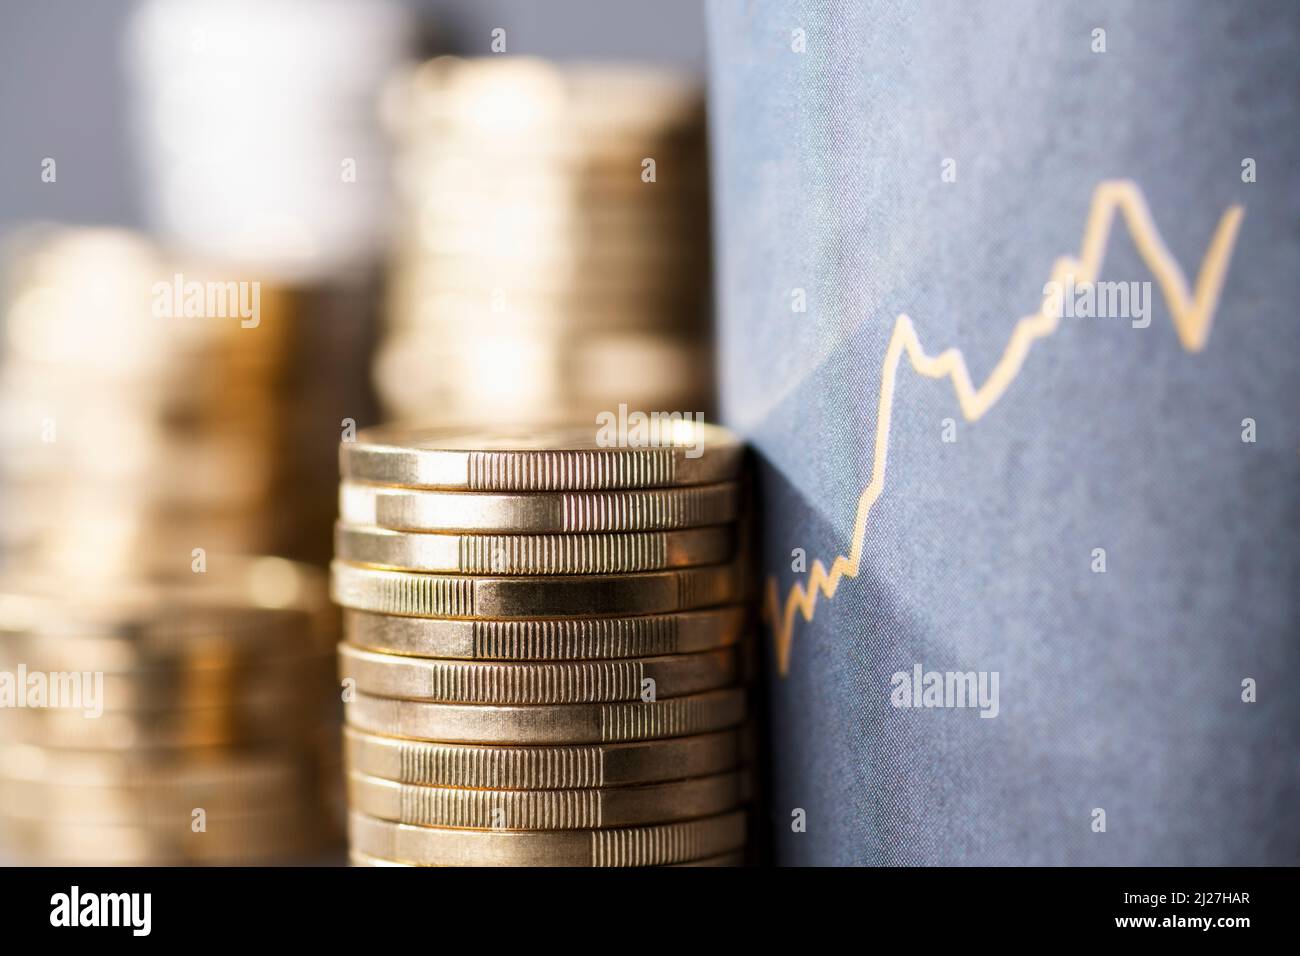 Pila de monedas junto a una curva ascendente que simboliza el aumento de los costos debido a la inflación Foto de stock